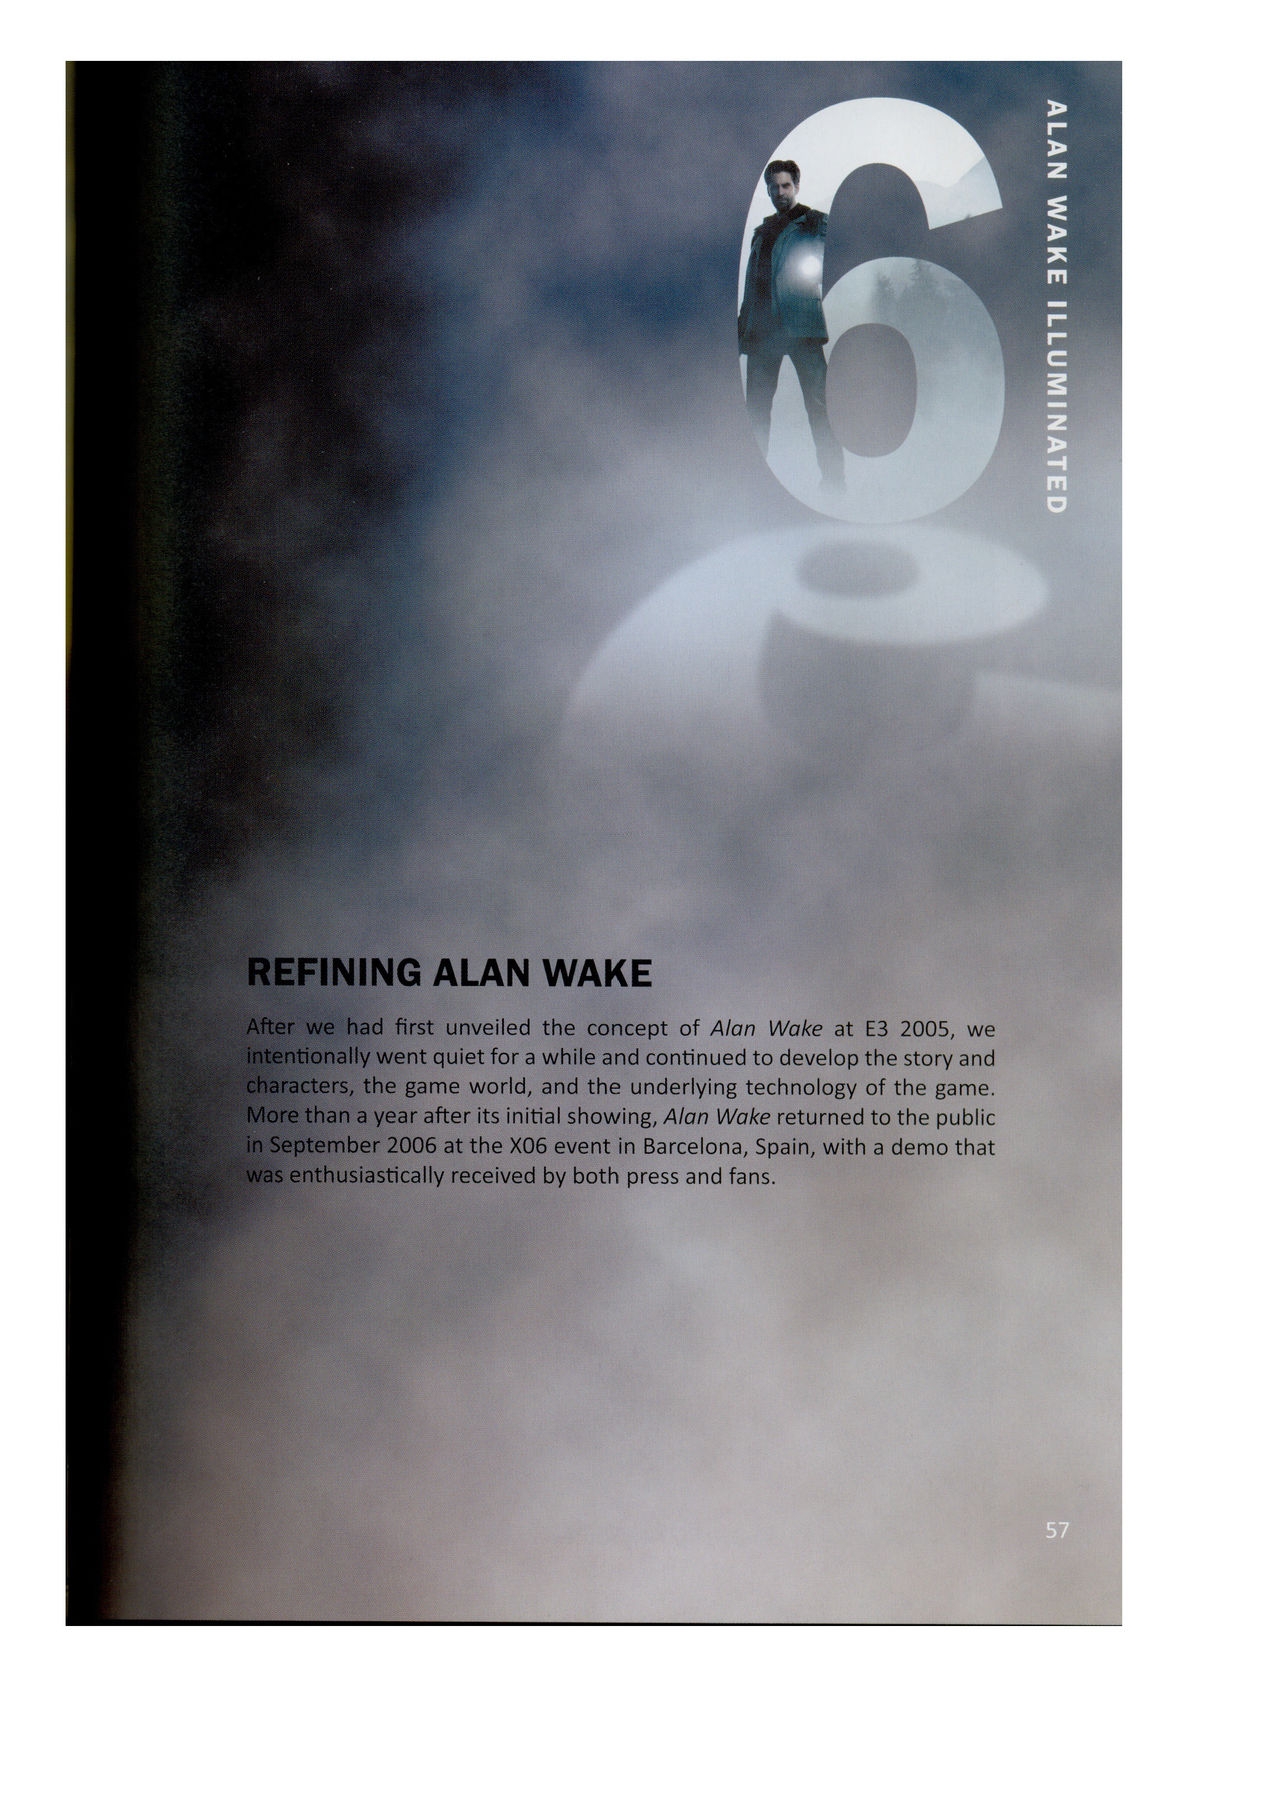 Alan Wake Illuminated 57